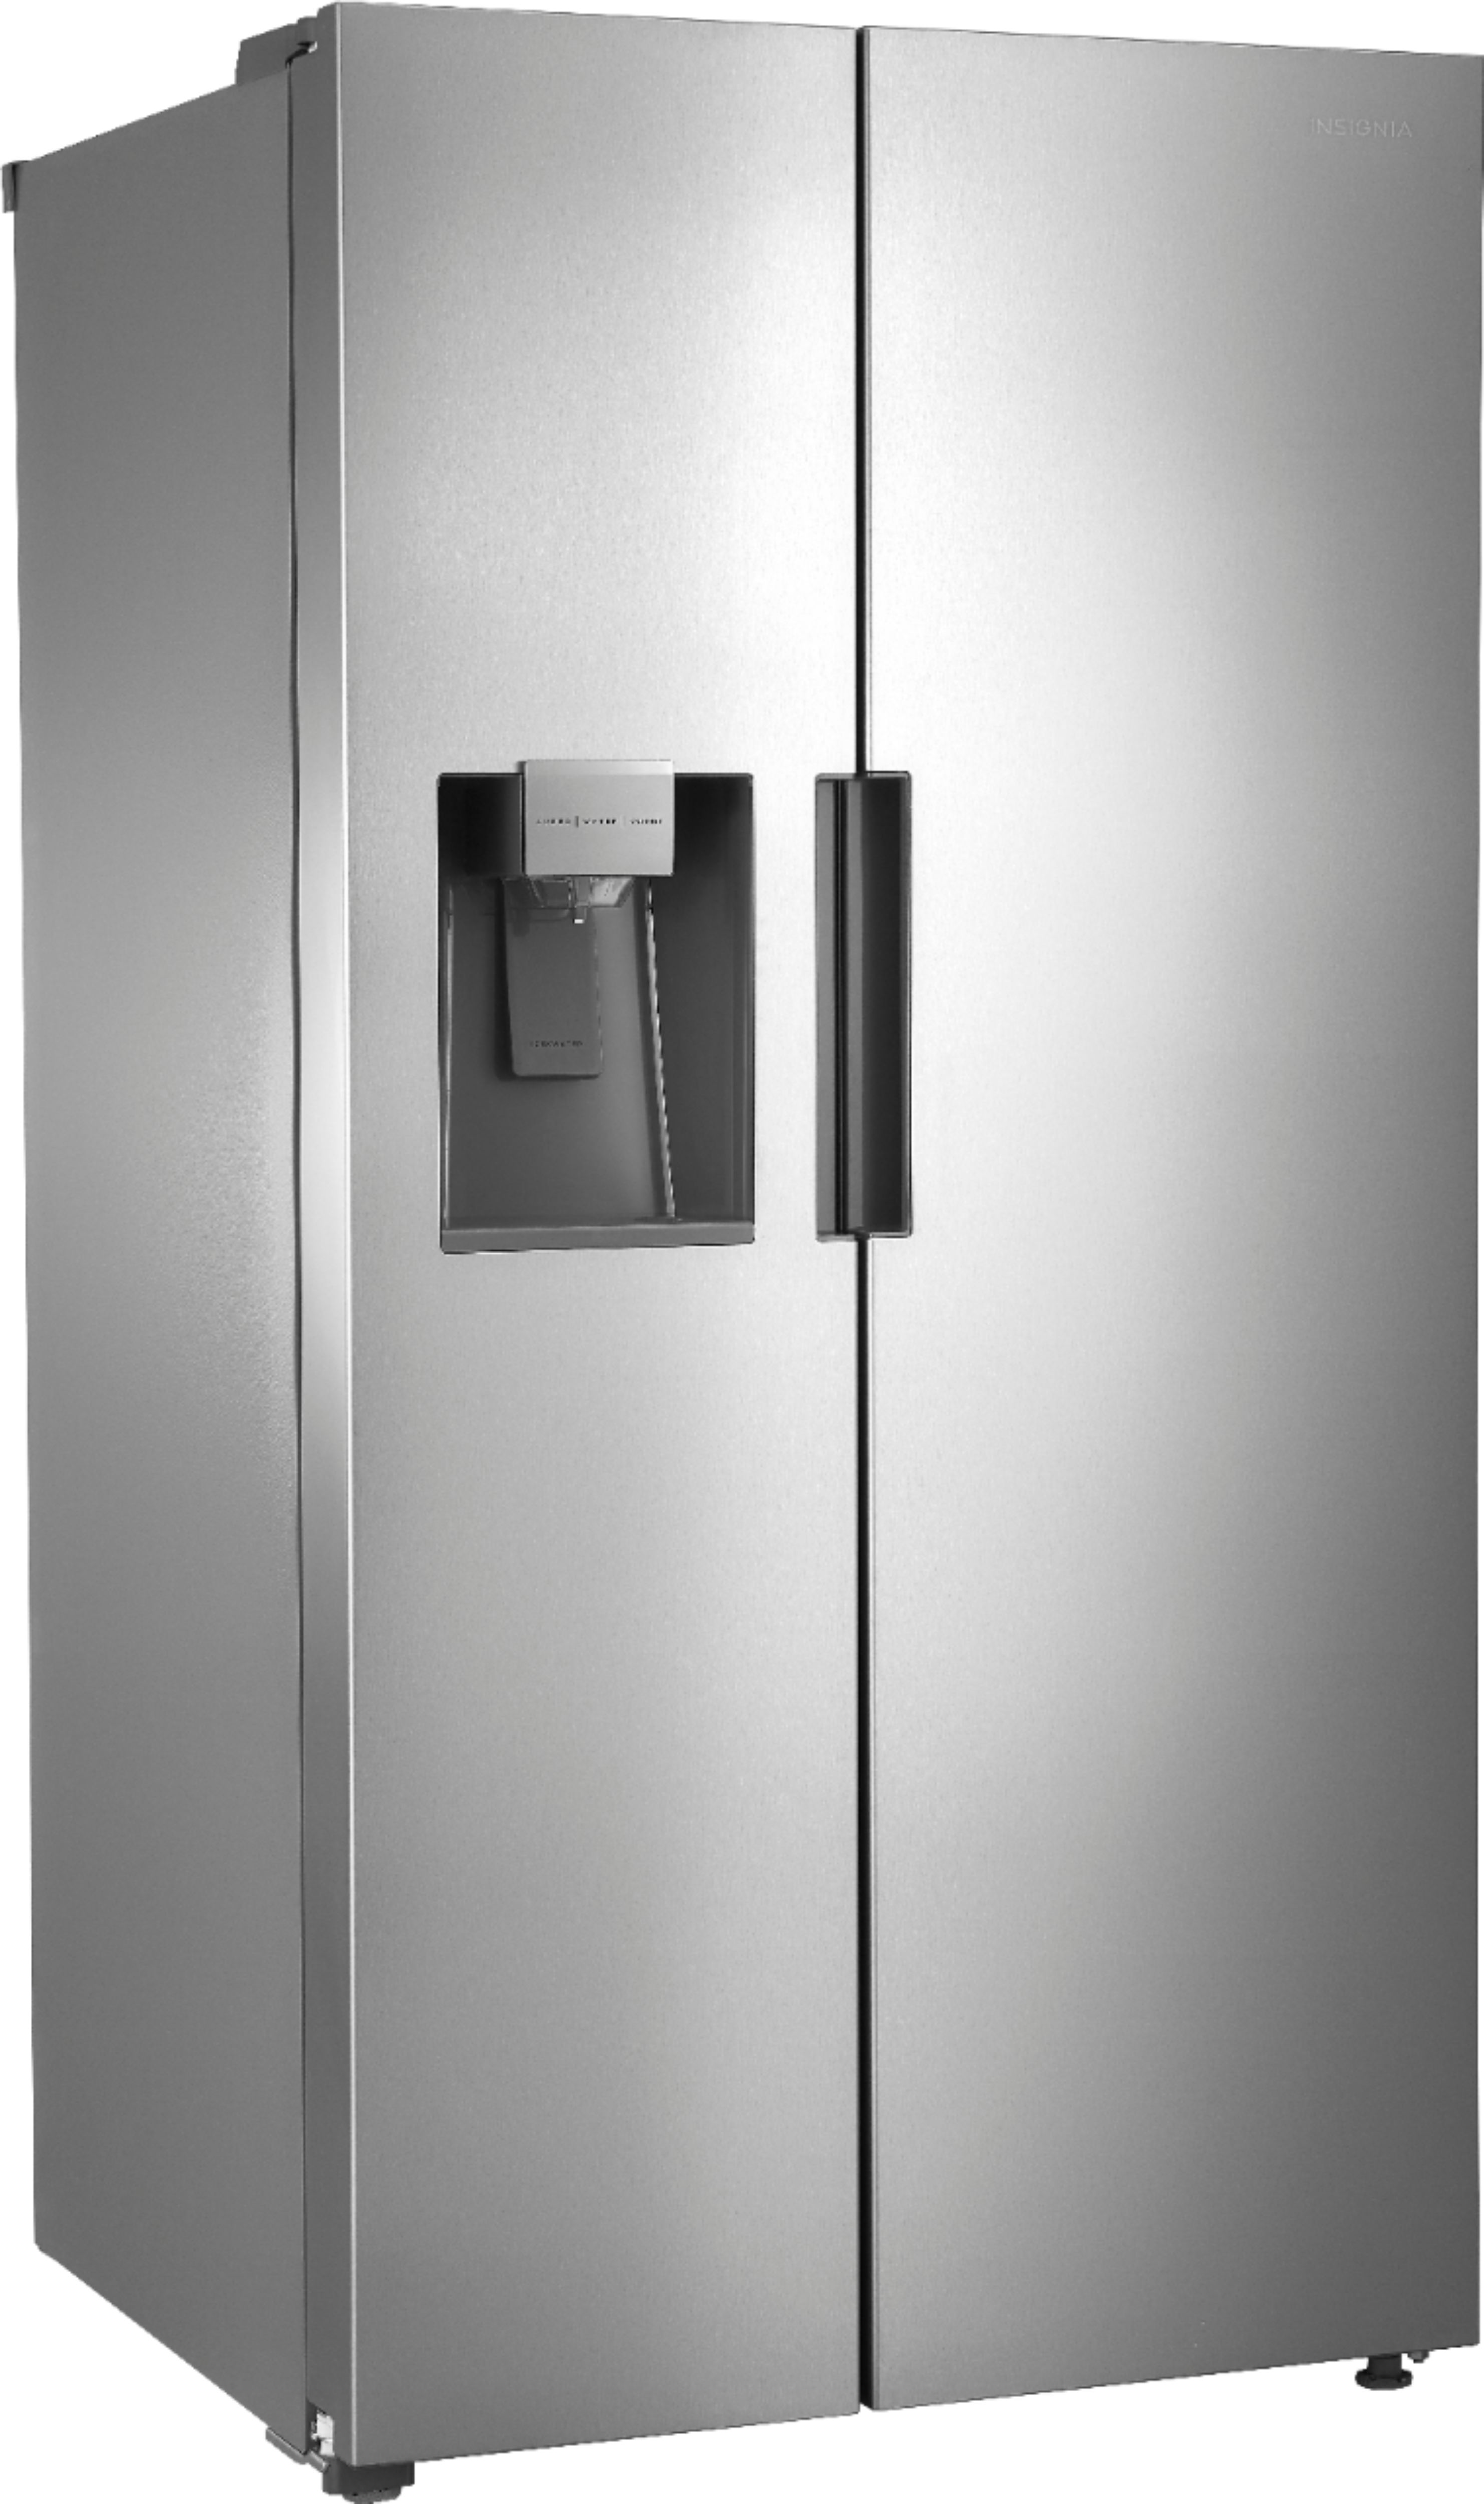 Customer Reviews: Insigniaâ¢ 26 5/16 Cu. Ft. Side-by-Side Refrigerator Stainless steel NS 